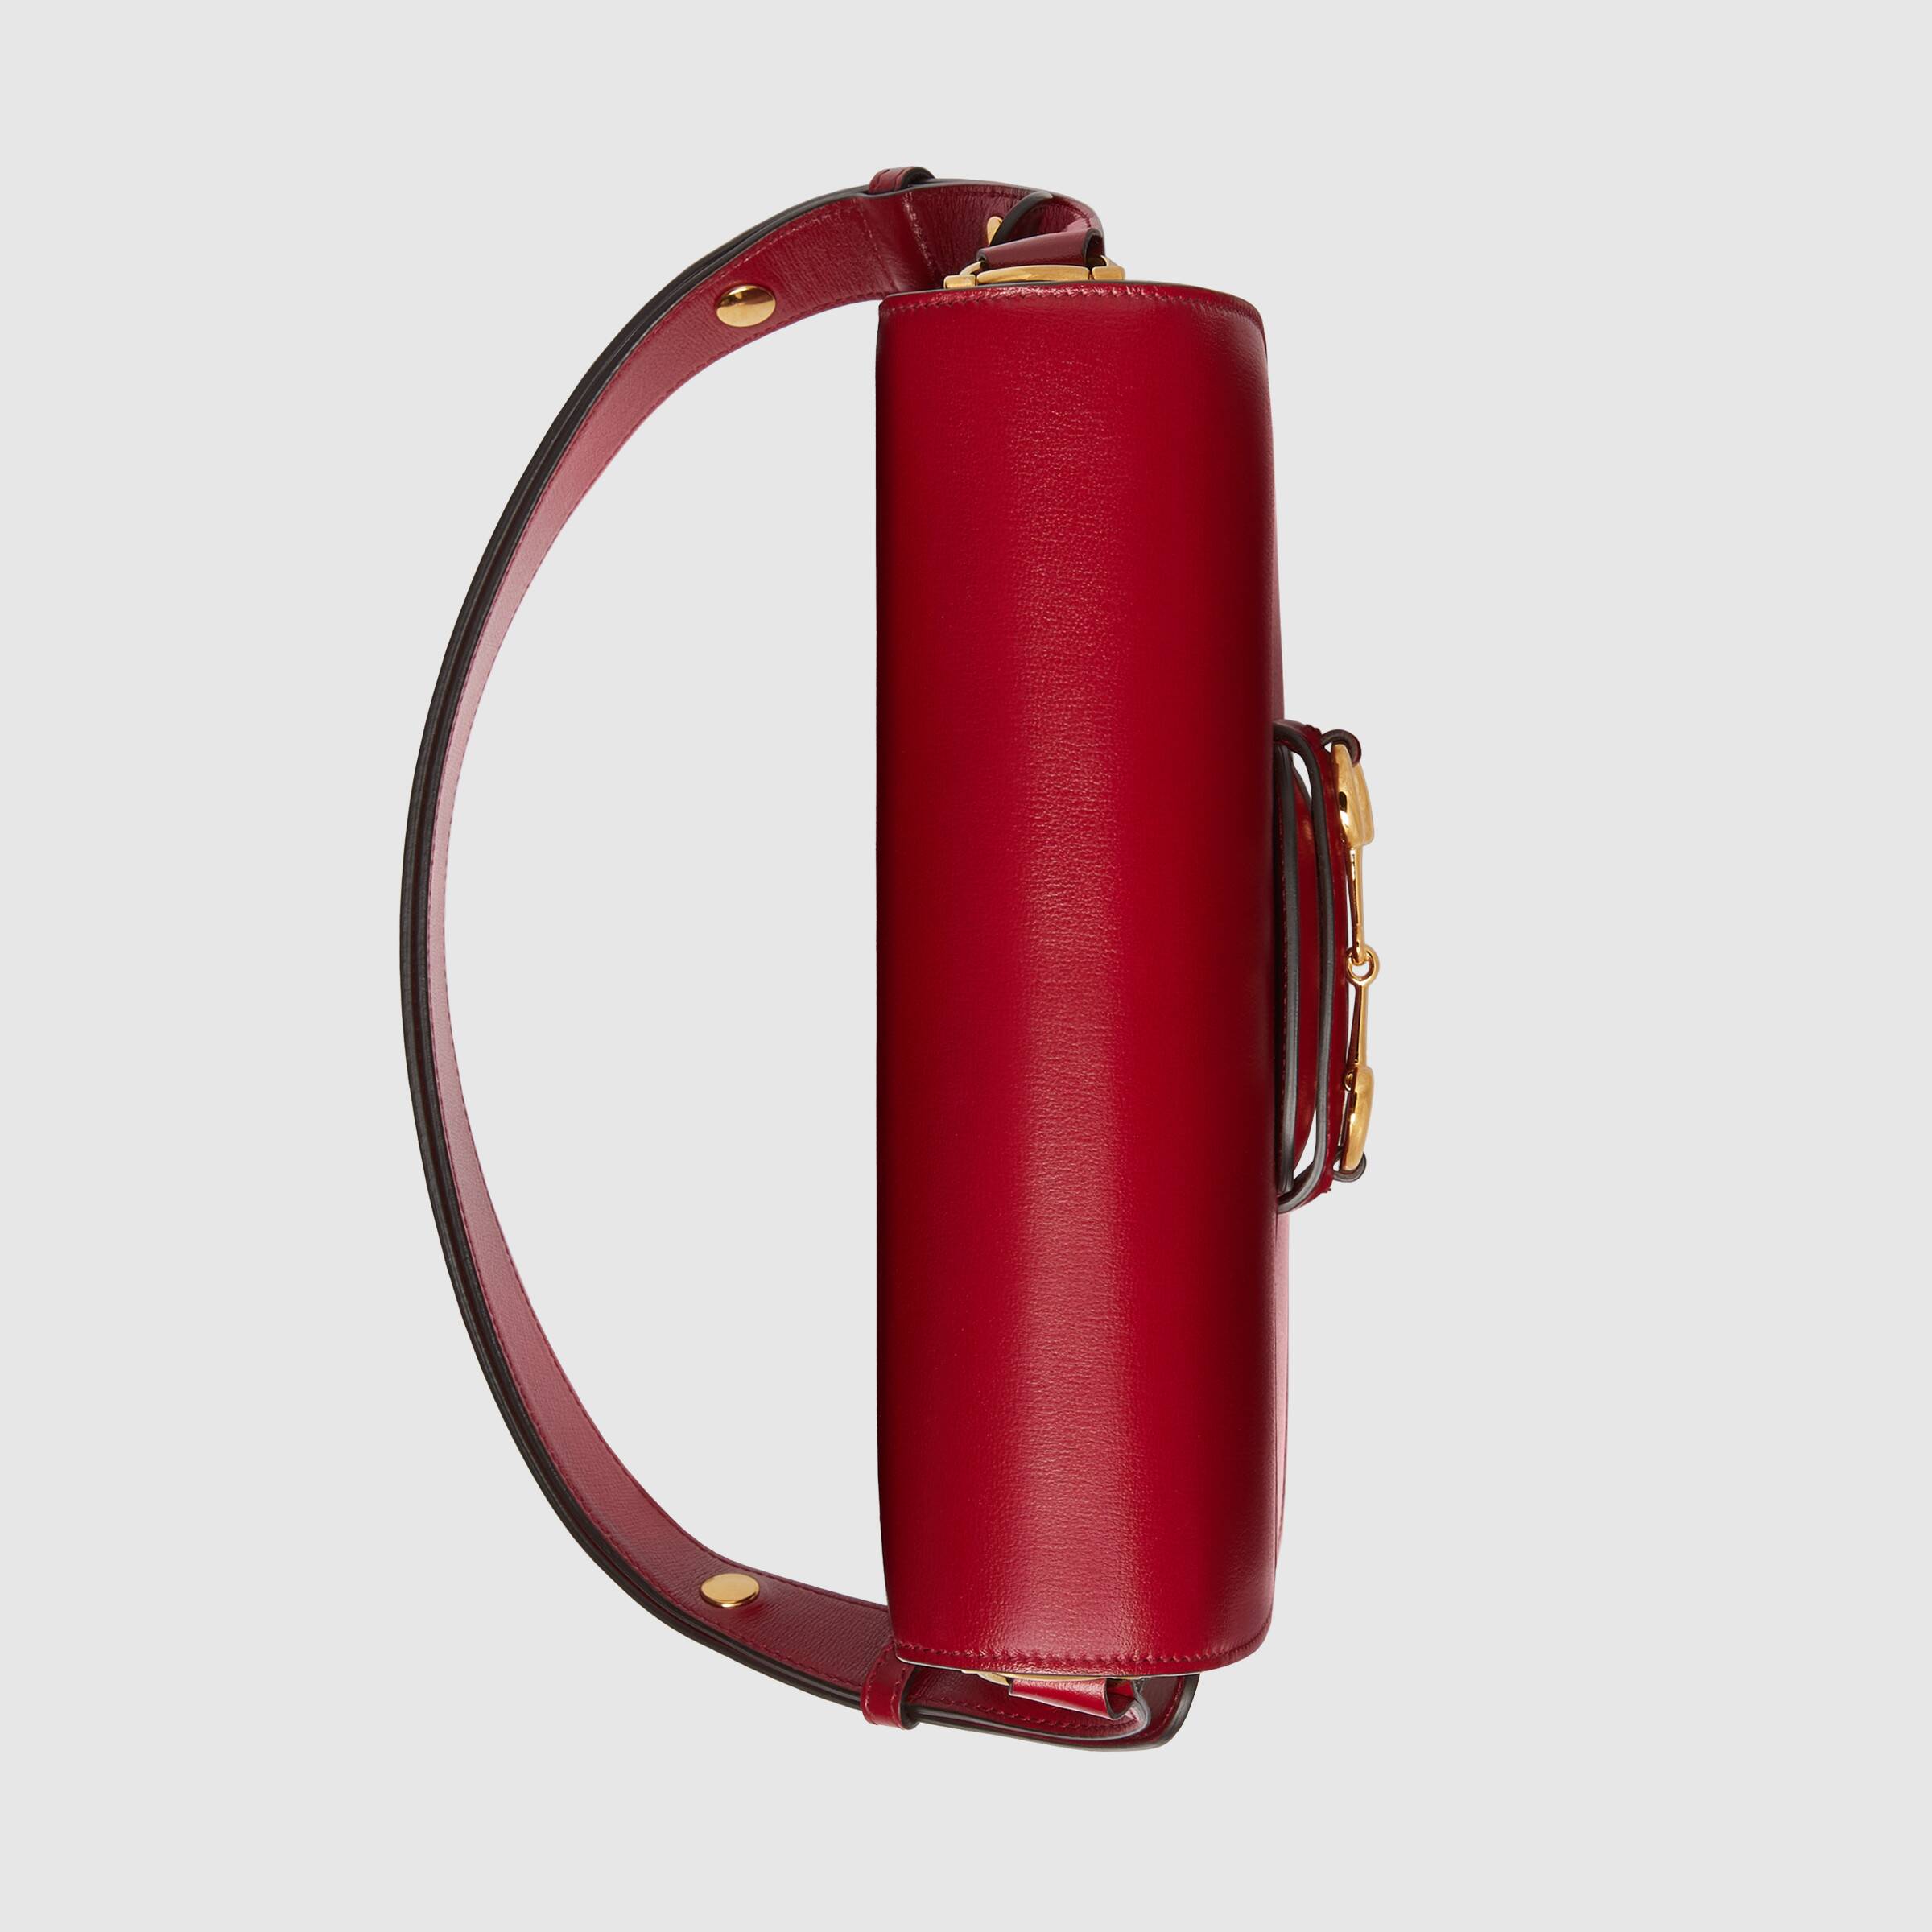 Gucci 1955 Horsebit Shoulder Bag Red